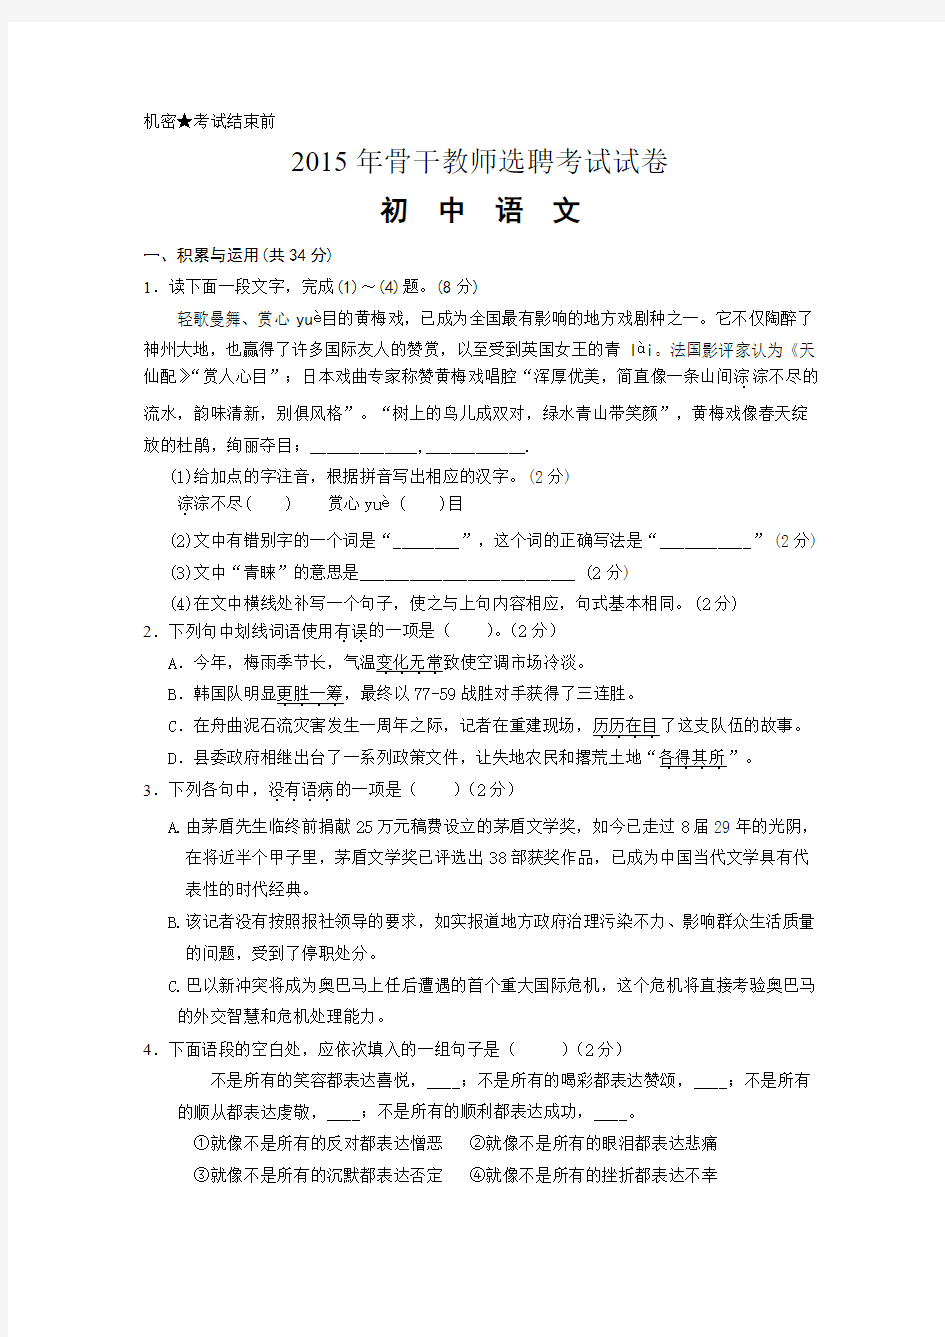 初中语文骨干教师招聘考试试卷